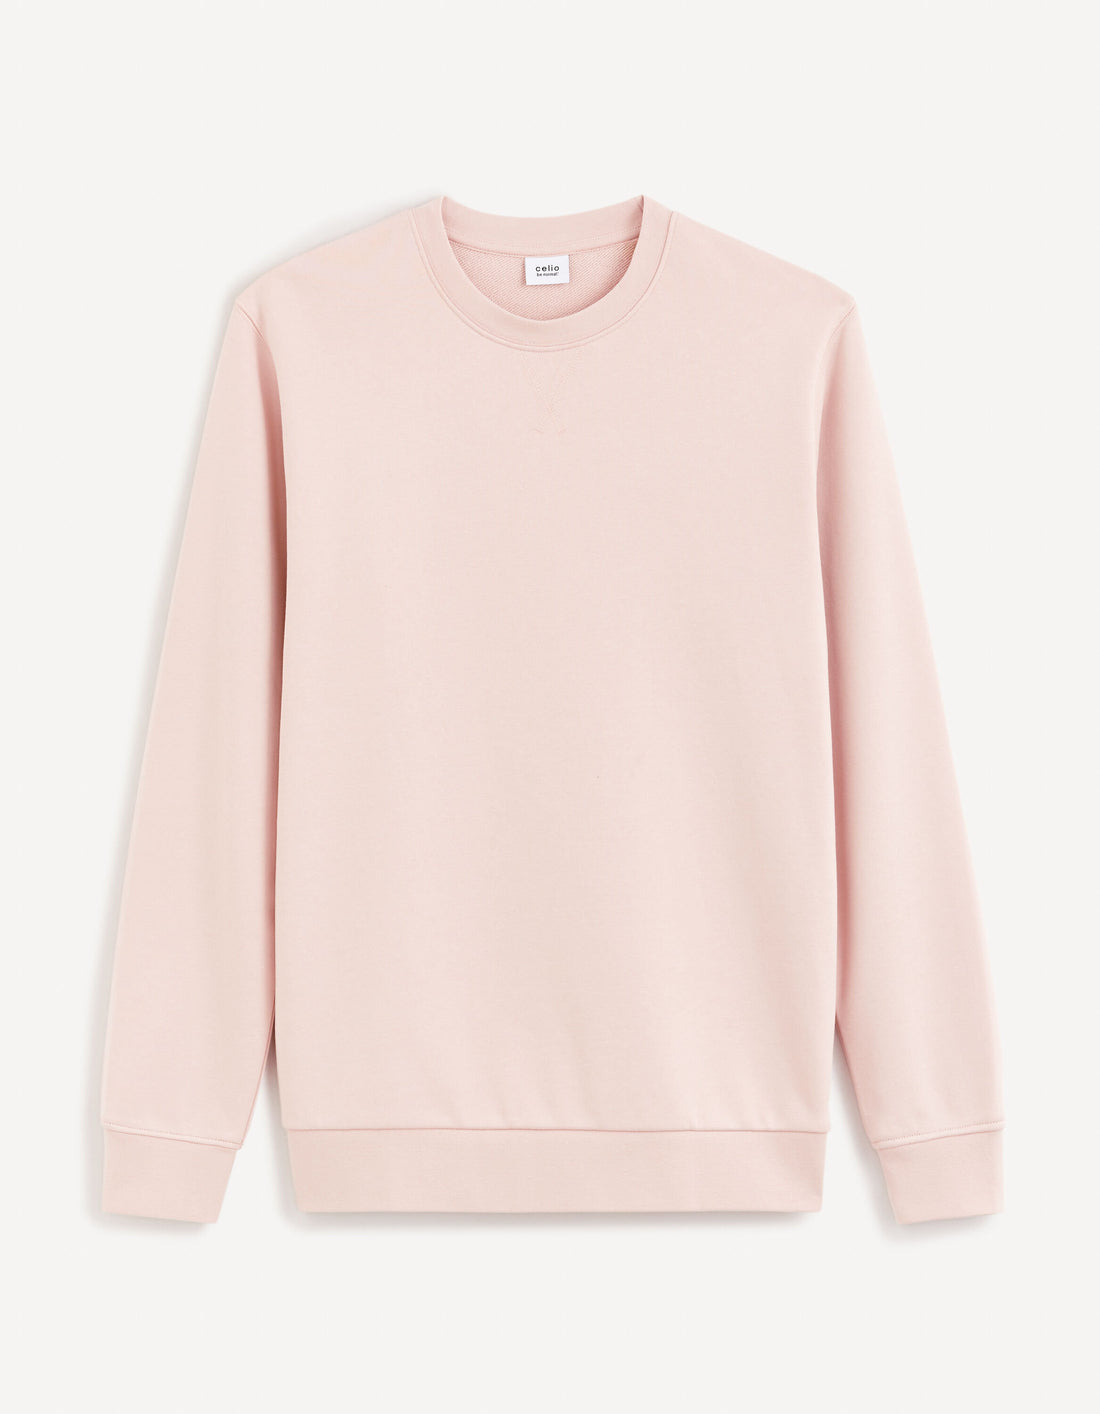 Round Neck Sweatshirt 100% Cotton_FESEVEN_DUSTY PINK 02_01